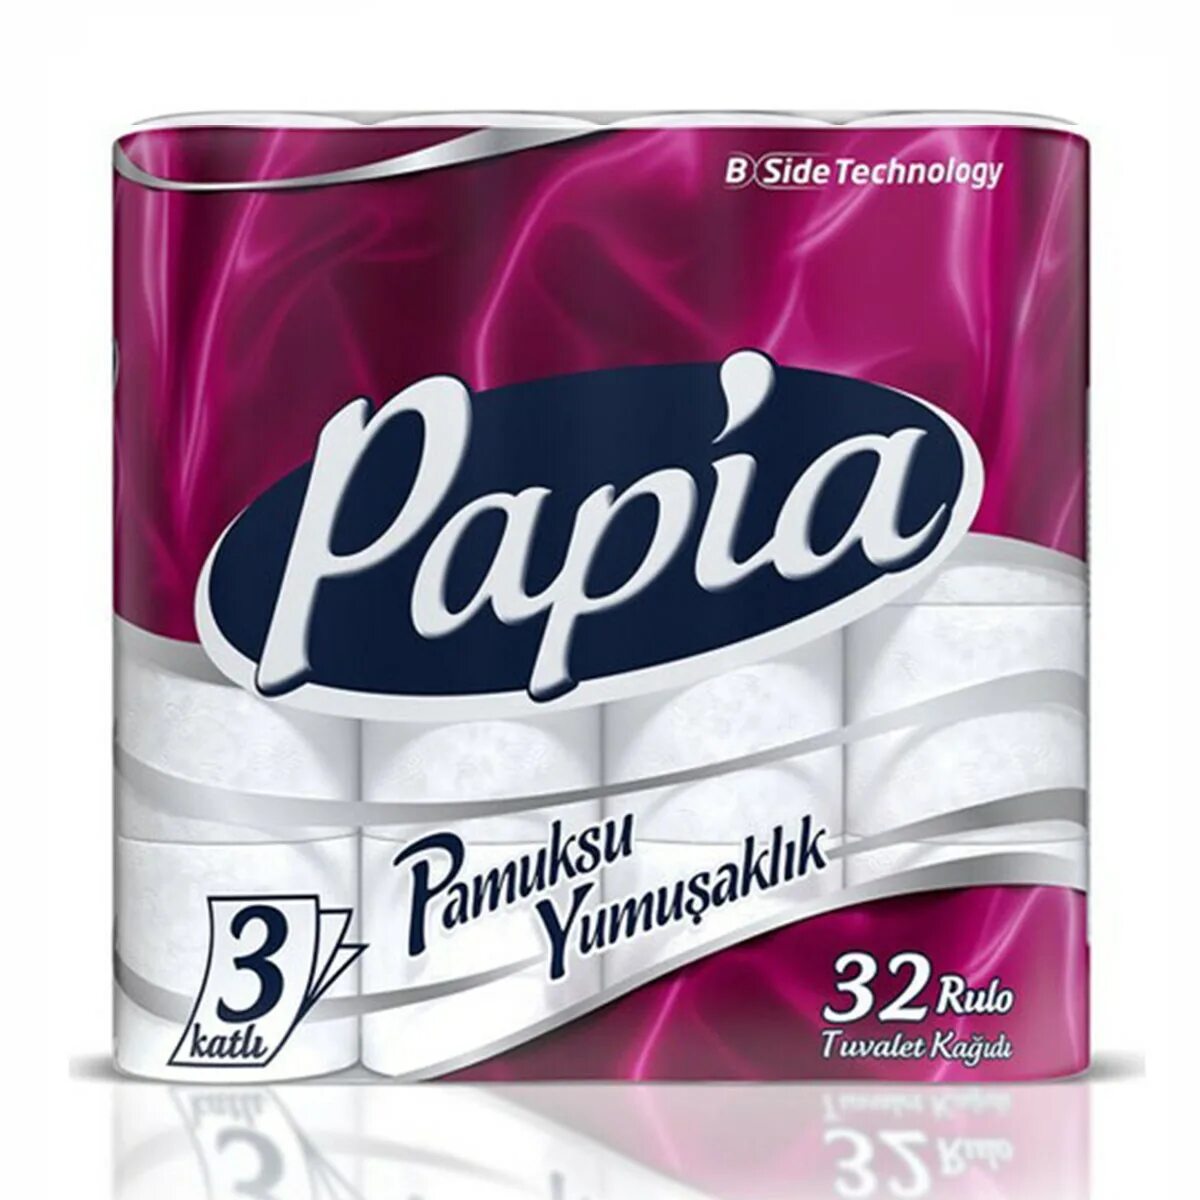 Туалетная бумага Papia 32. Туалетная бумага Папия 32. Papia туалетная бумага трехслойная 120102011 32 рулона. Туалетная бумага Папия 32 рулона.